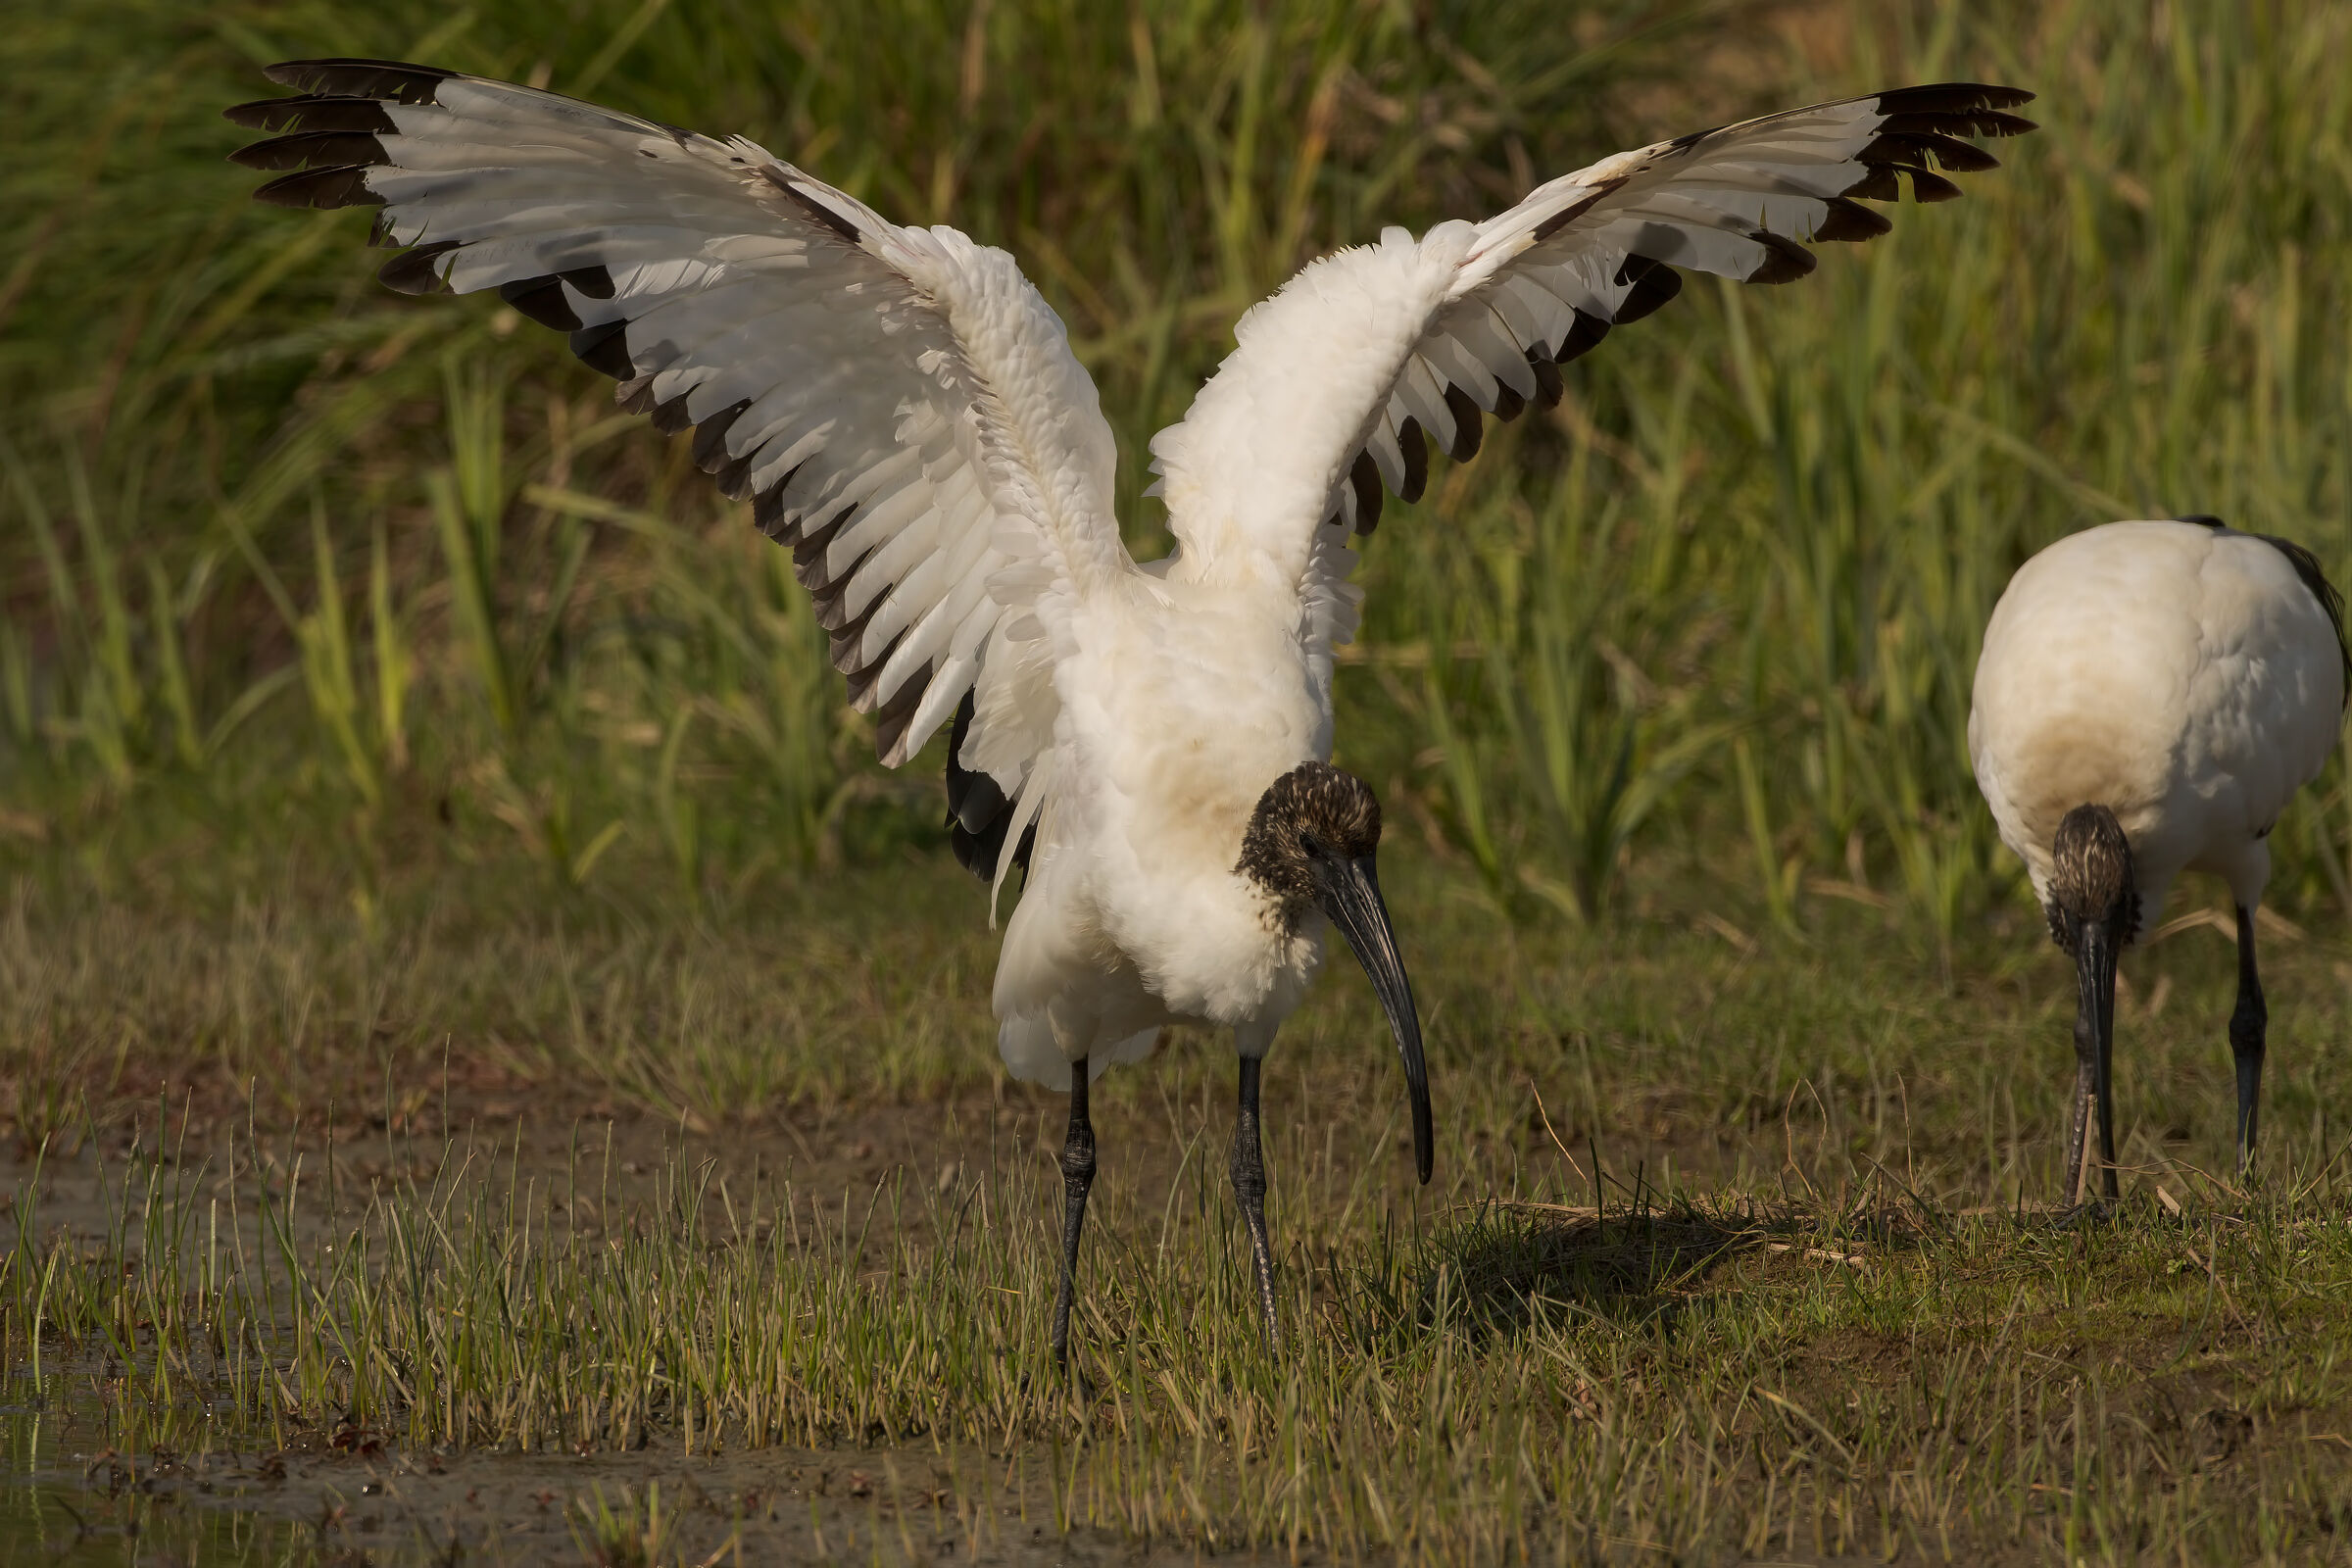 Still ibis...